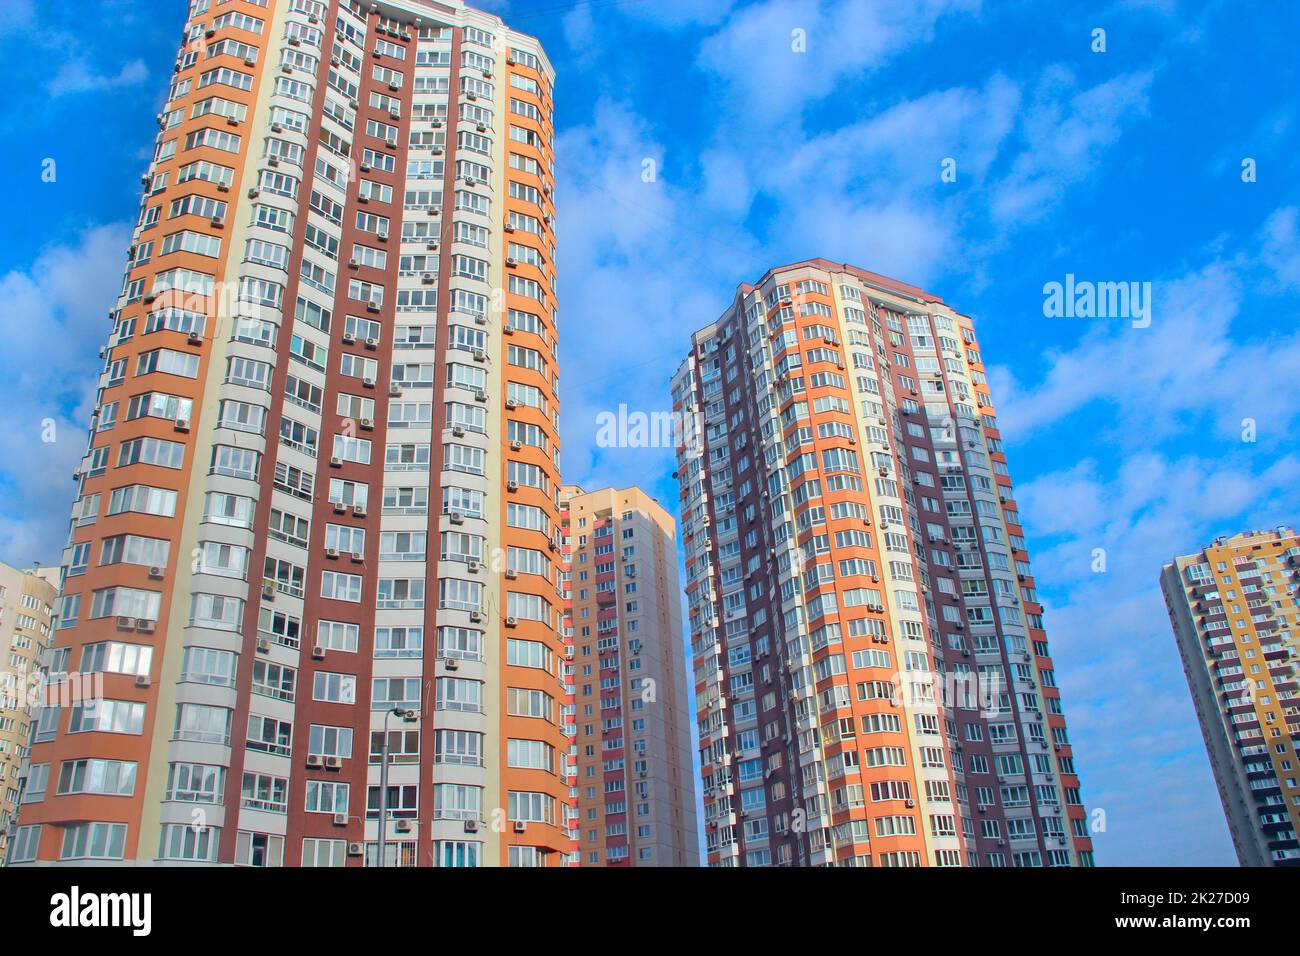 grattacielo alto e moderno e cielo blu. Vista di edifici residenziali a più piani Foto Stock